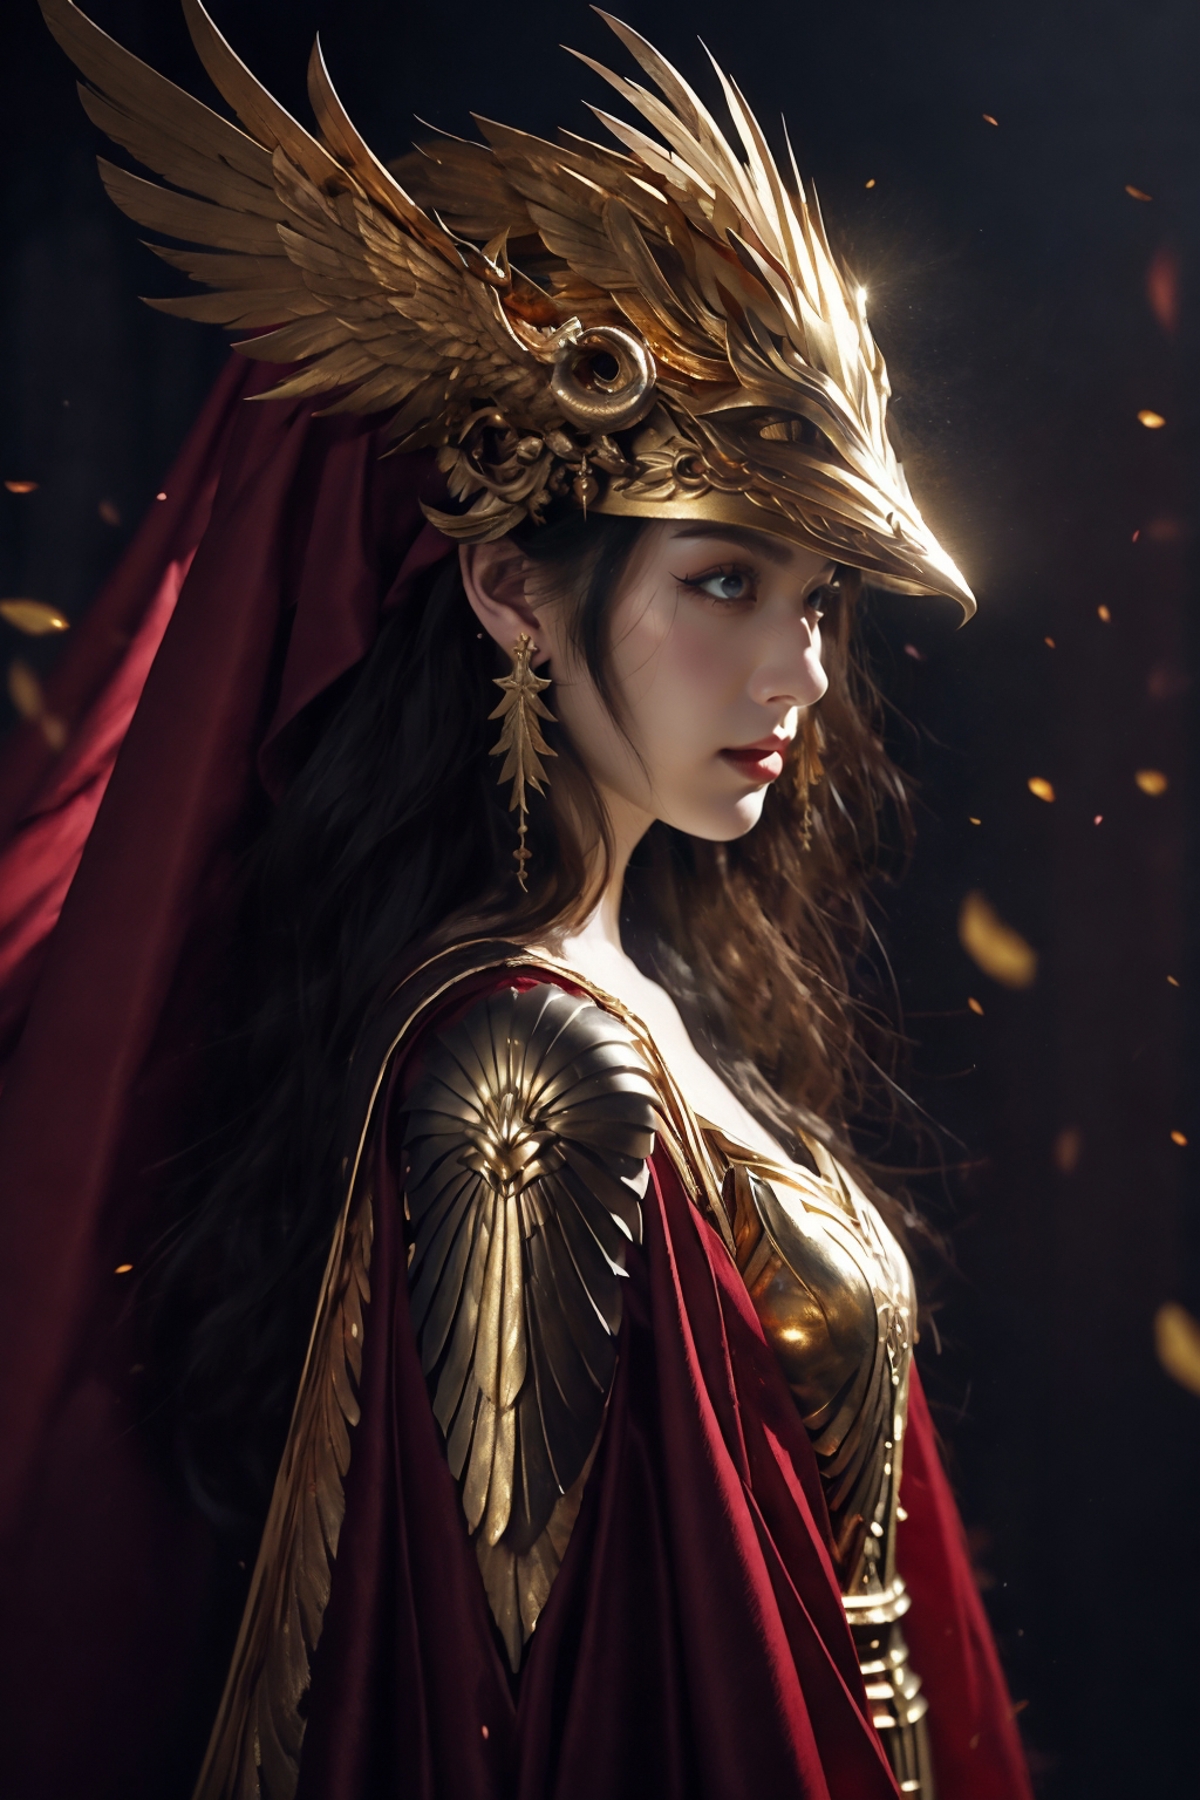 绪儿-女武神 winged helmet image by XRYCJ